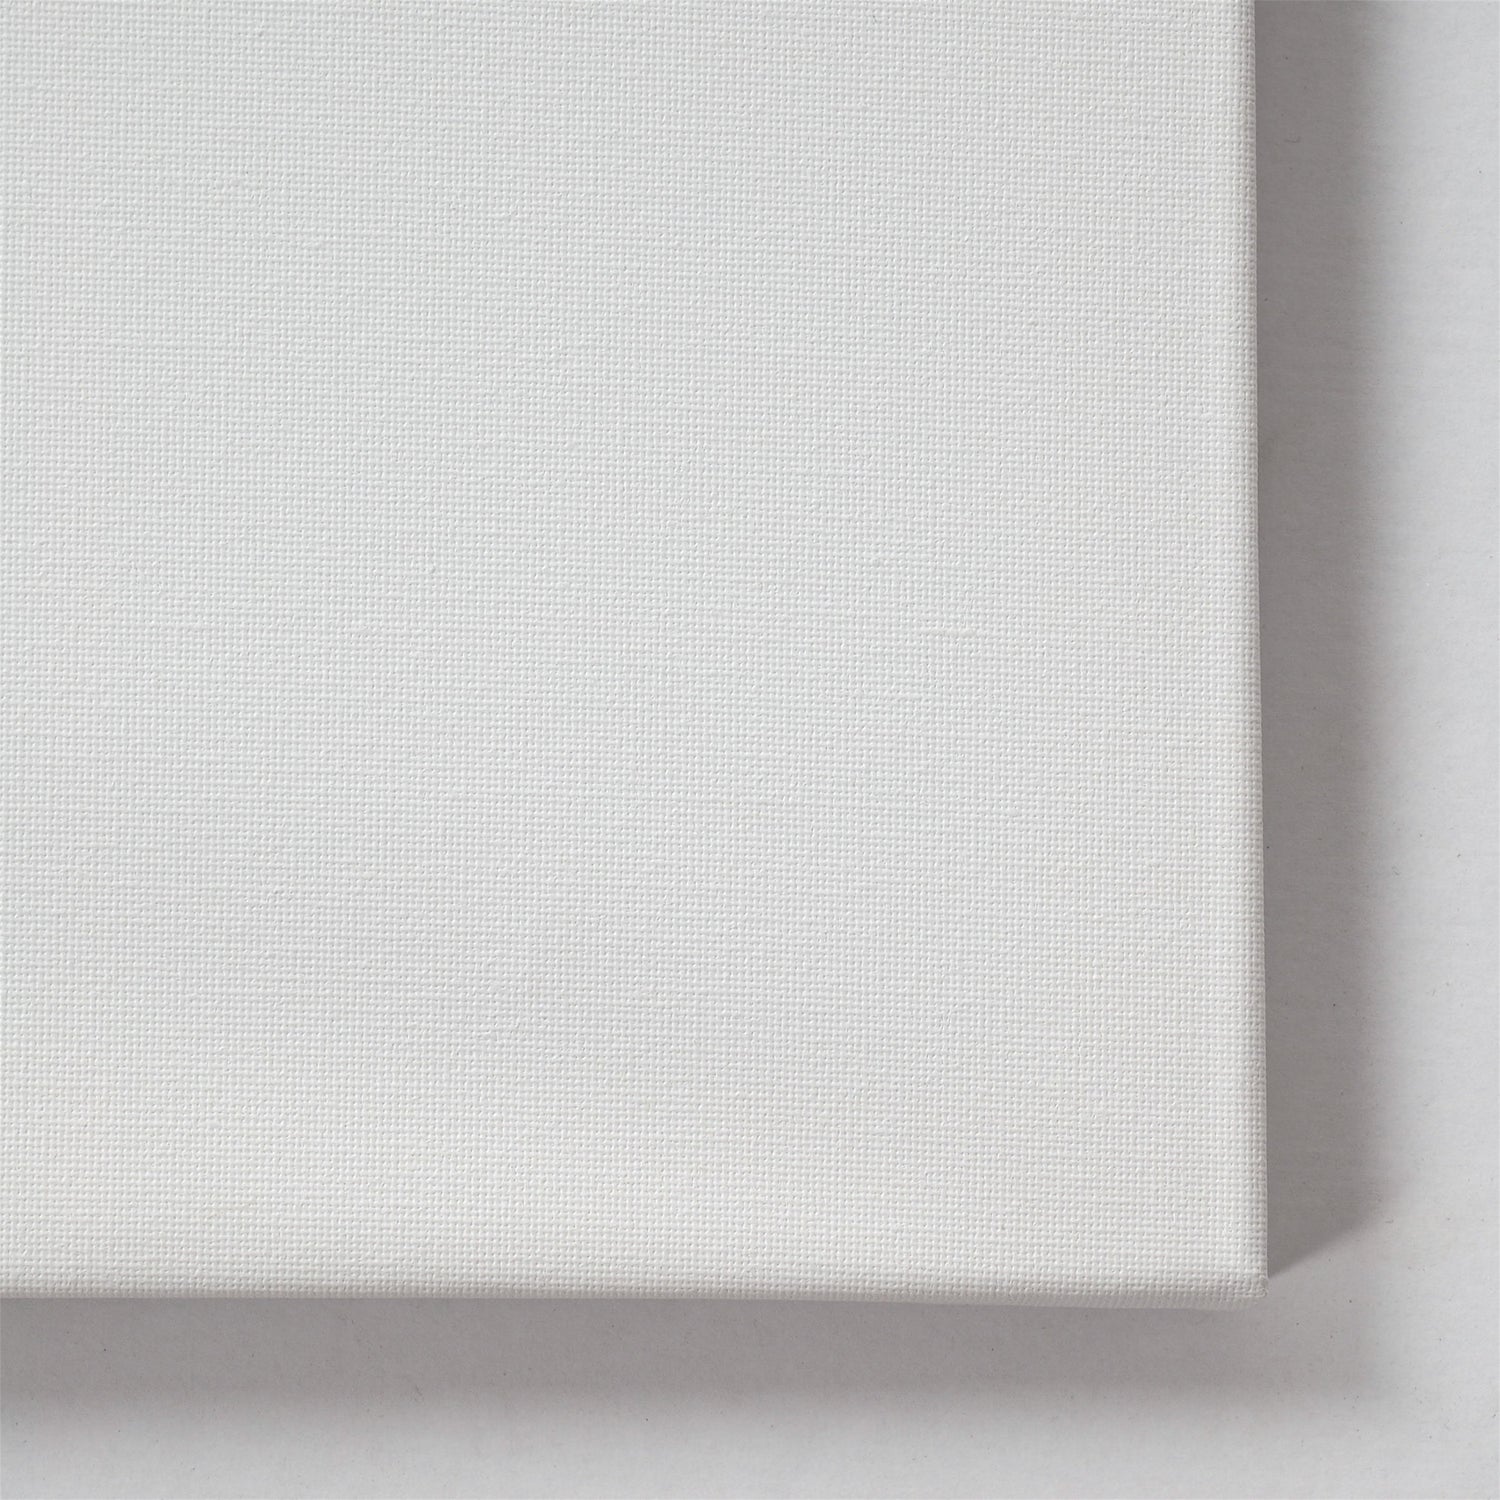 10 ART-STAR Leinwände | 40x50 cm | auf Keilrahmen, 100% Baumwolle